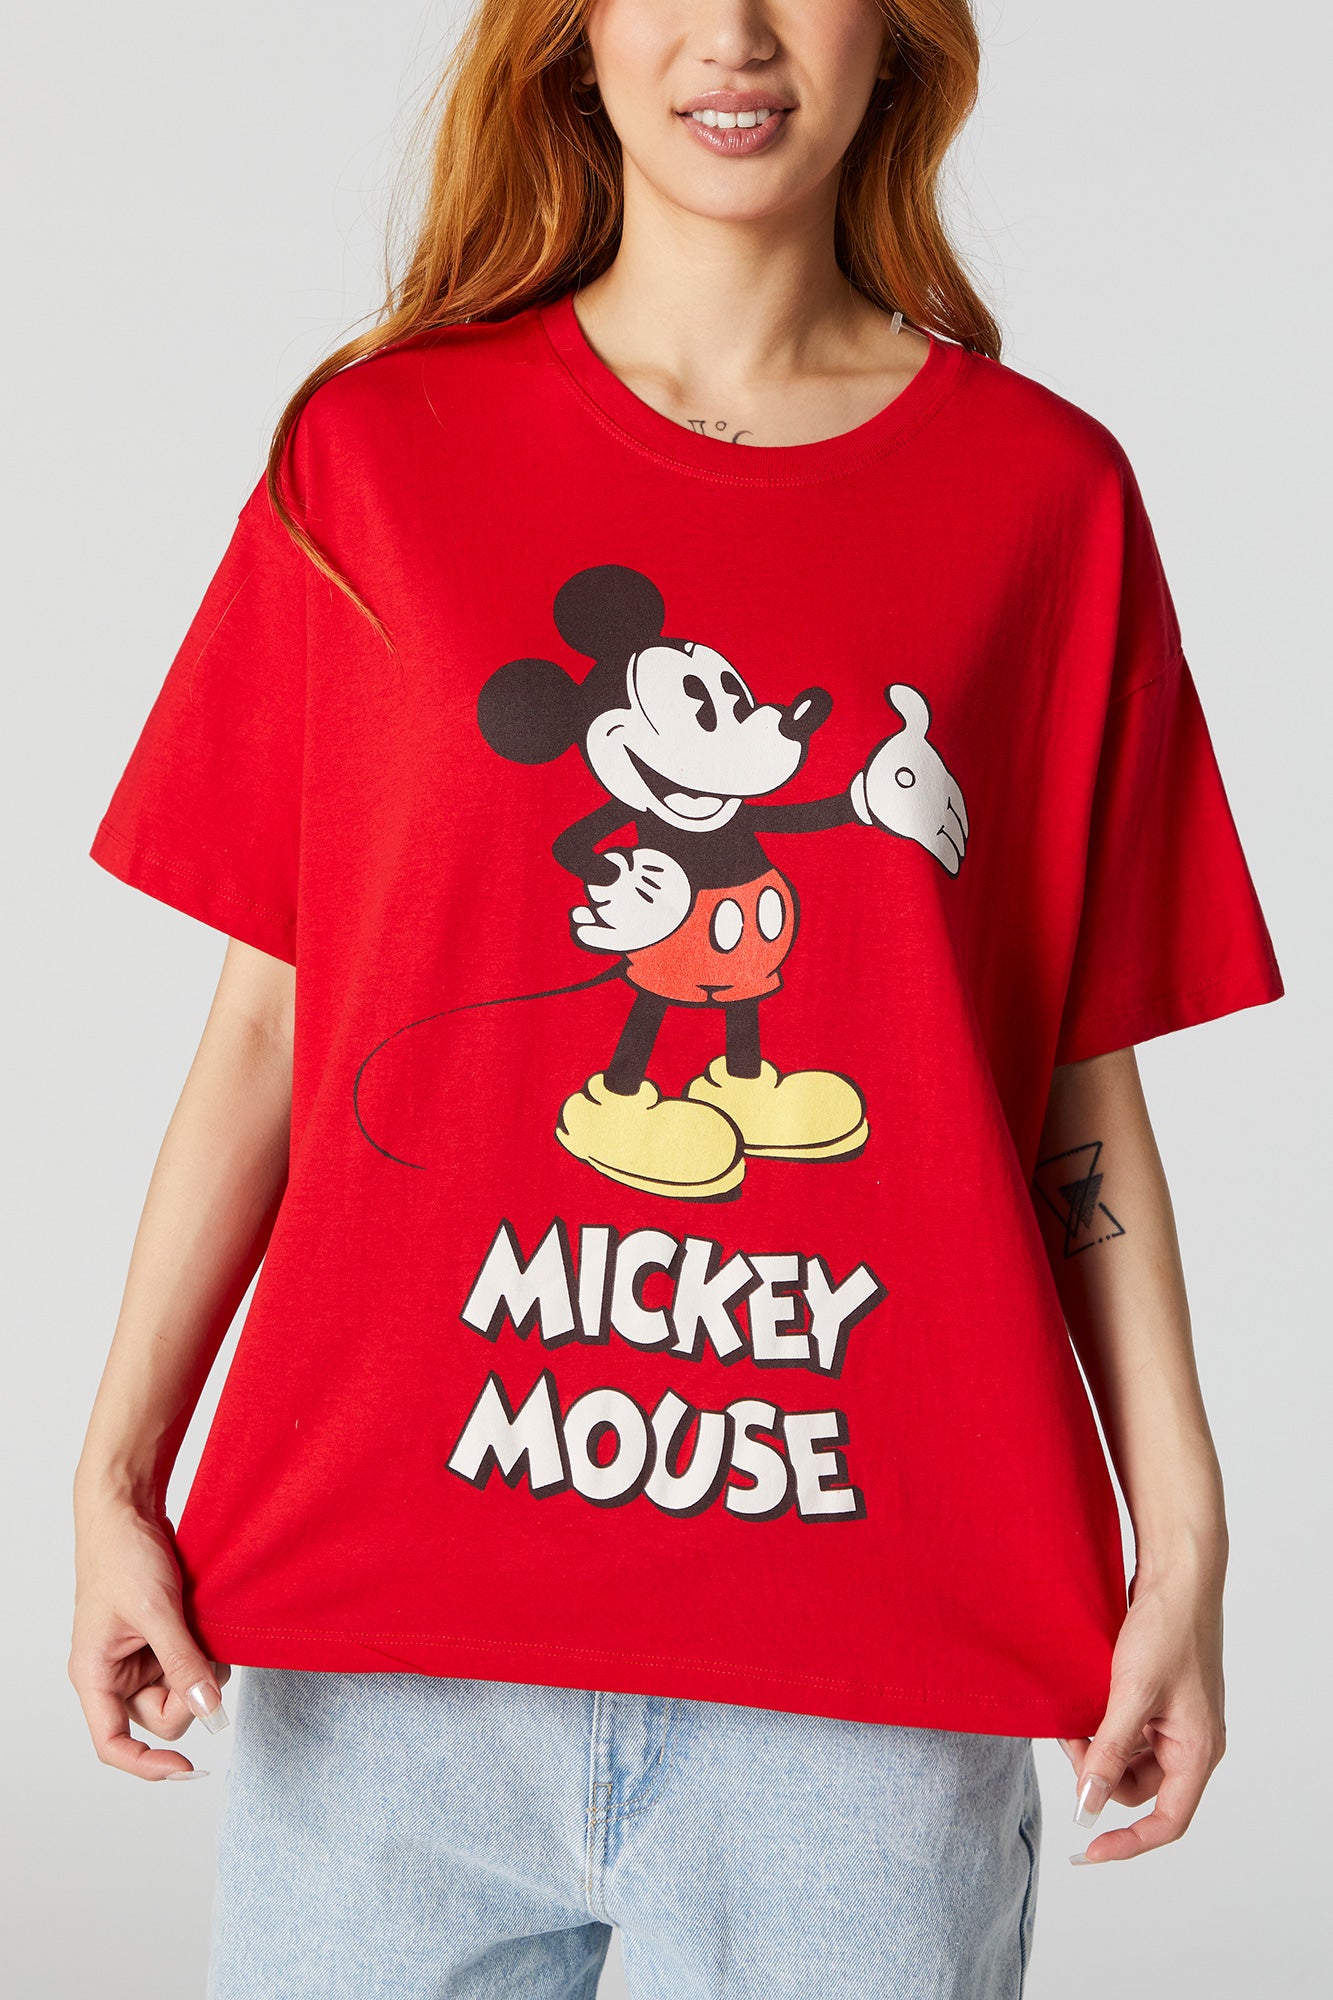 Mickey Urban Art T-shirt, Disney Official Merchandise